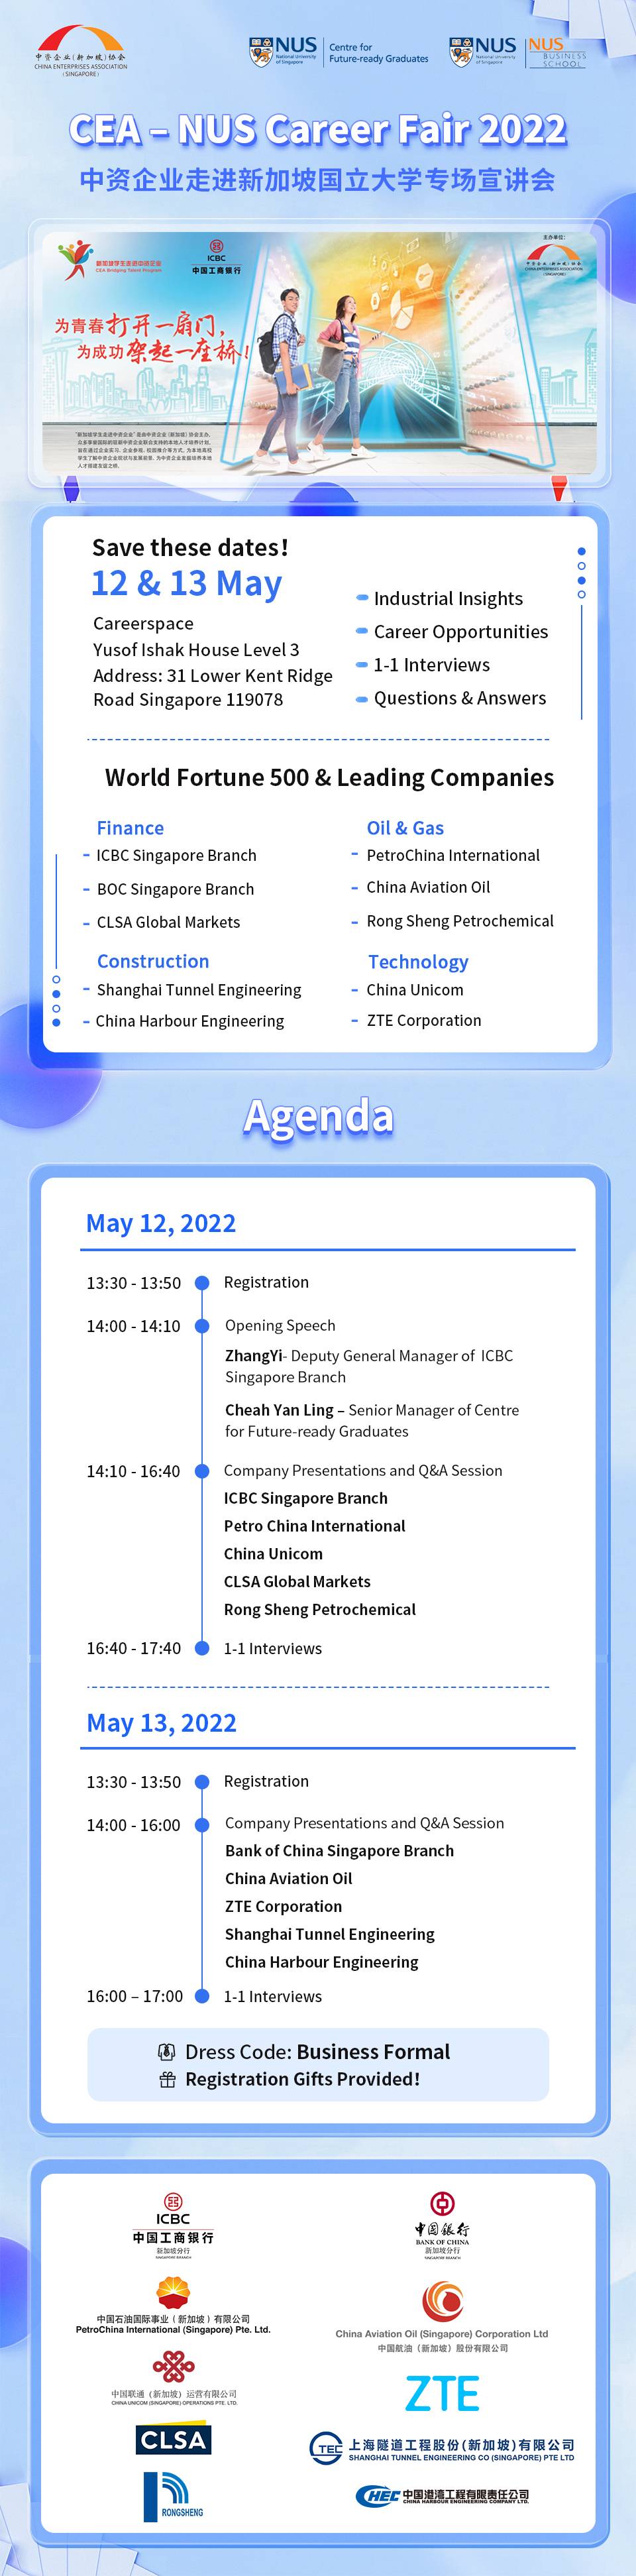 Chinese Enterprise Association (CEA) Recruitment Event EDM image